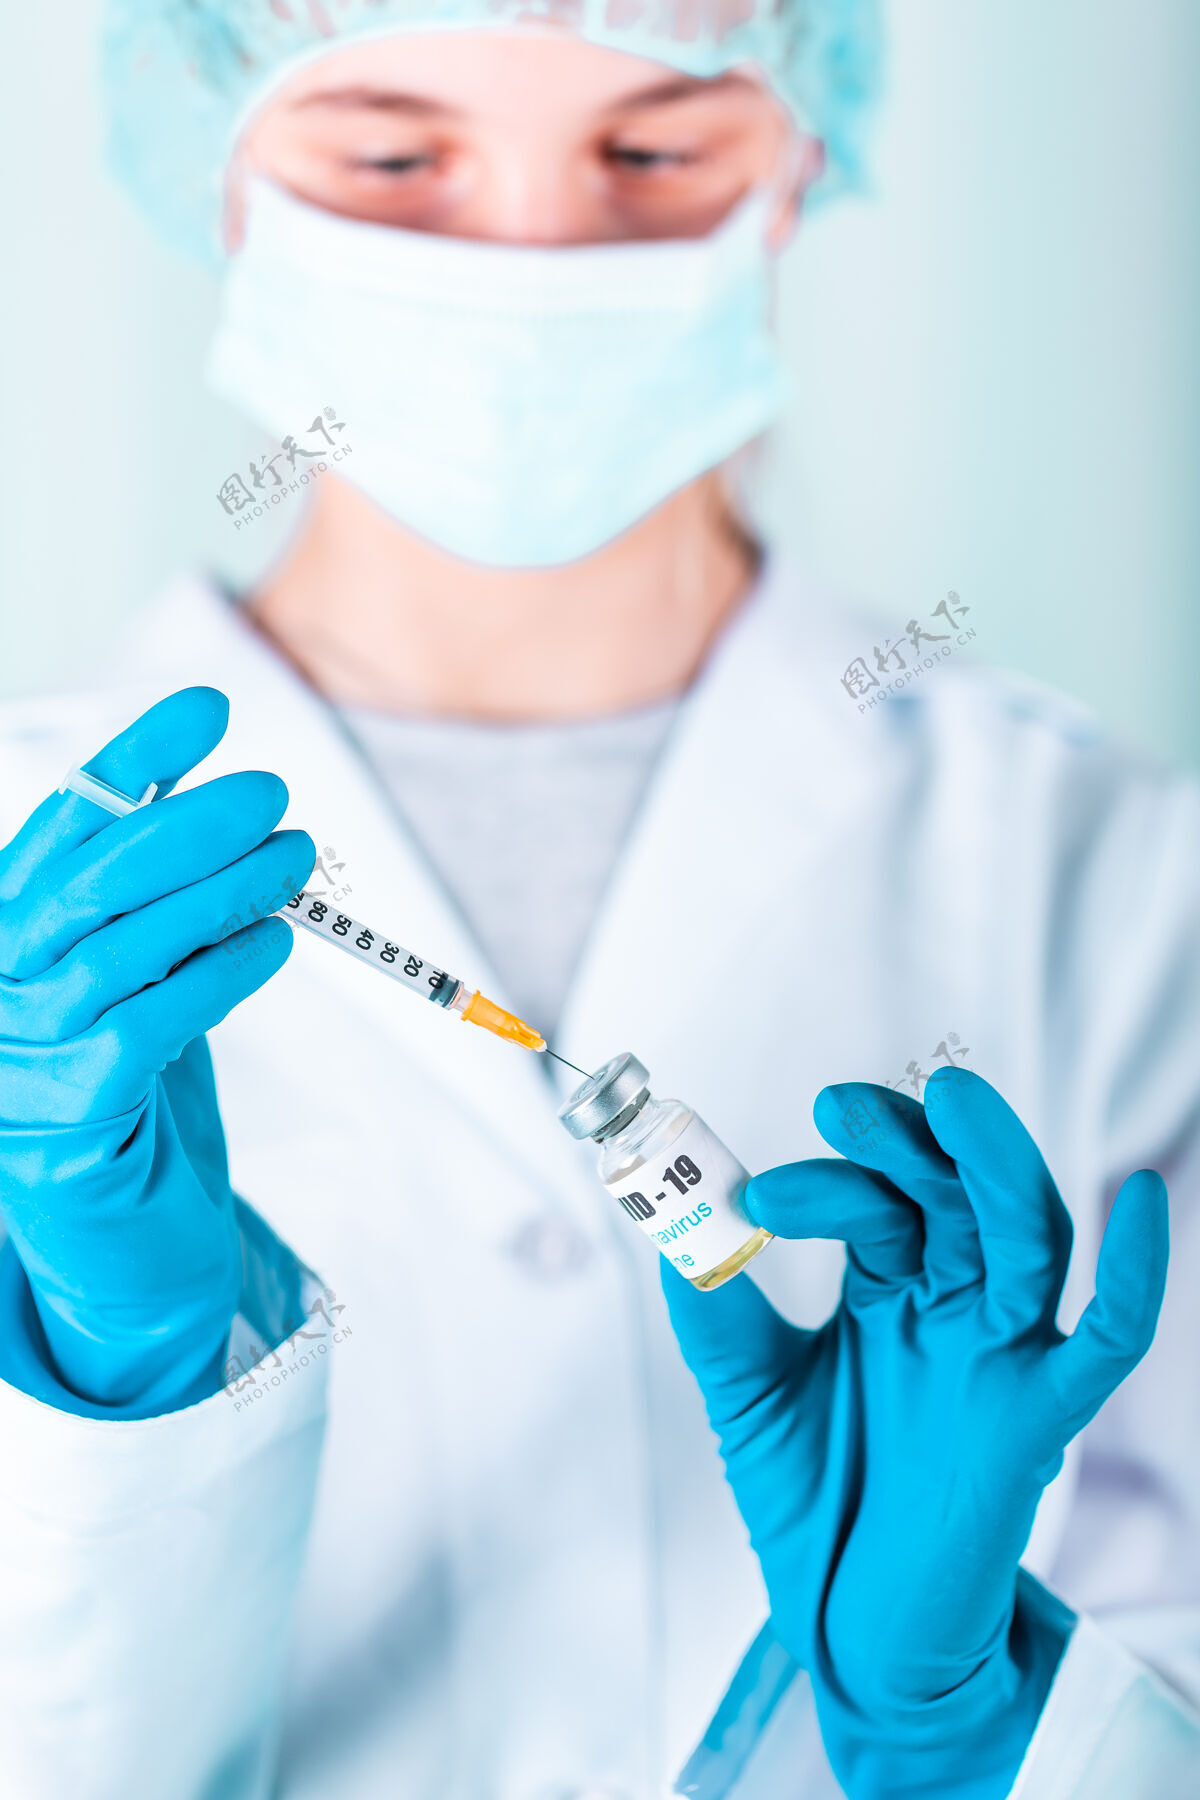 疫苗女医生或护士穿着制服 戴着手套 戴着口罩 在实验室里拿着带有冠状病毒疫苗标签的药瓶疫苗瓶护理针头手套